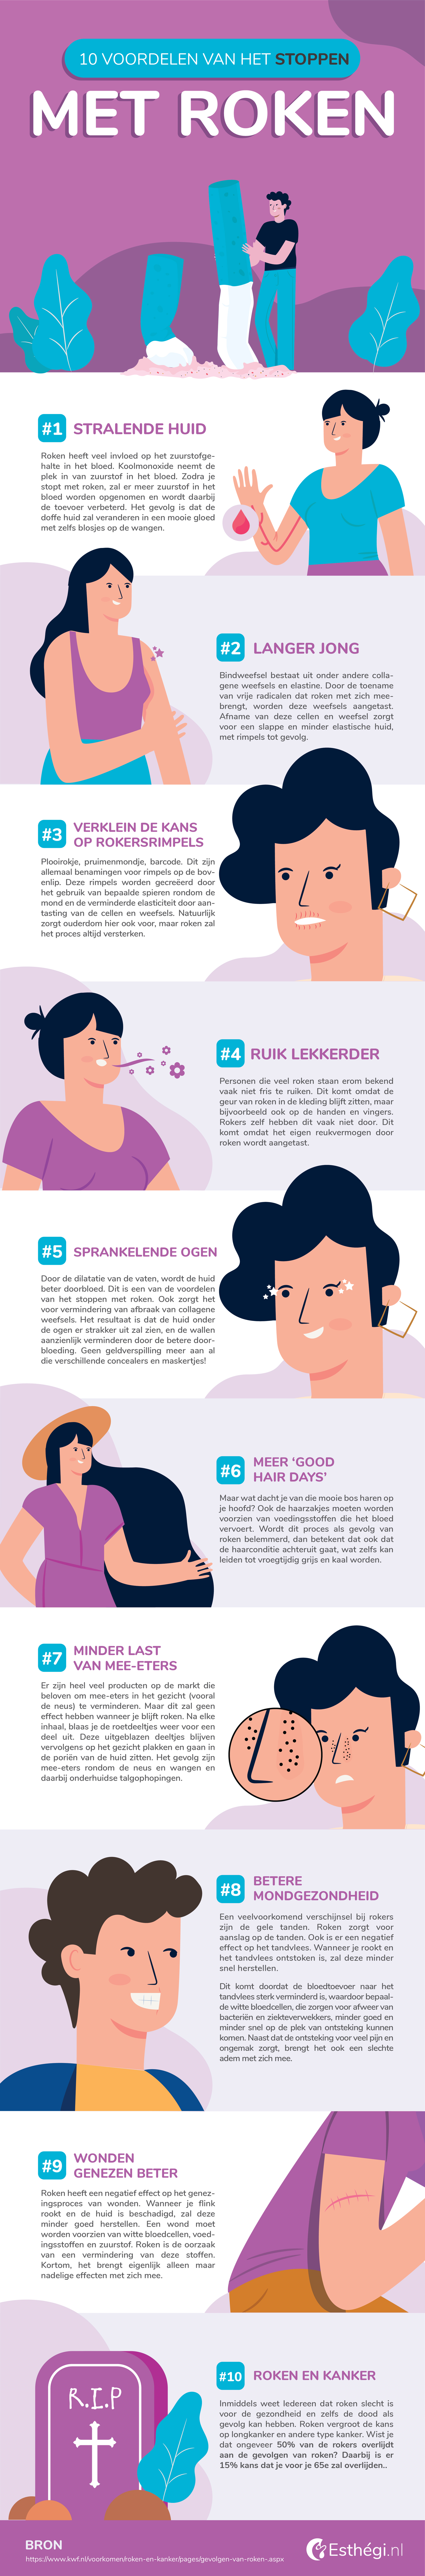 noedels verzekering fonds 10 Voordelen van het stoppen met roken (Infographic) - Esthegi.nl